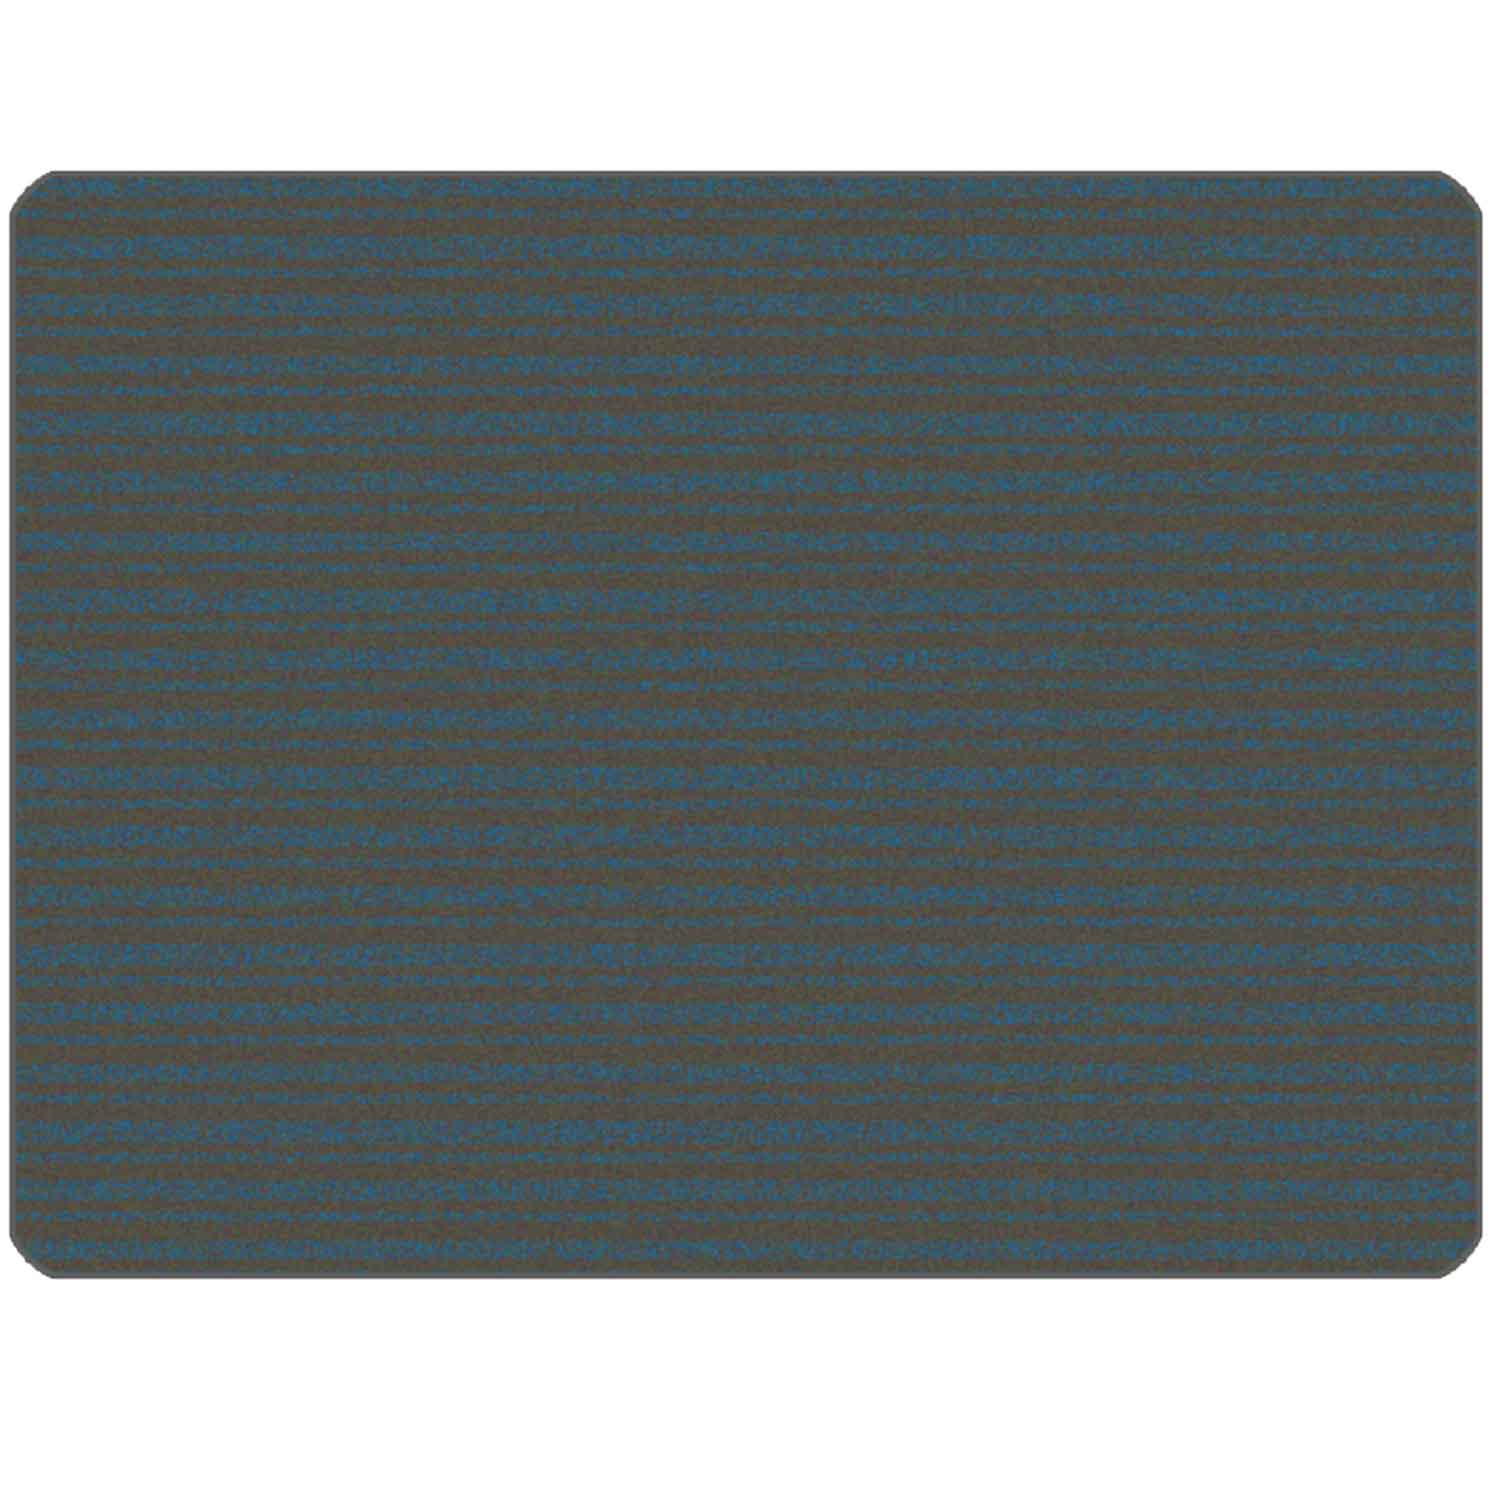 KIDSoft Subtle Stripes Rug Grey Blue 4'x6'